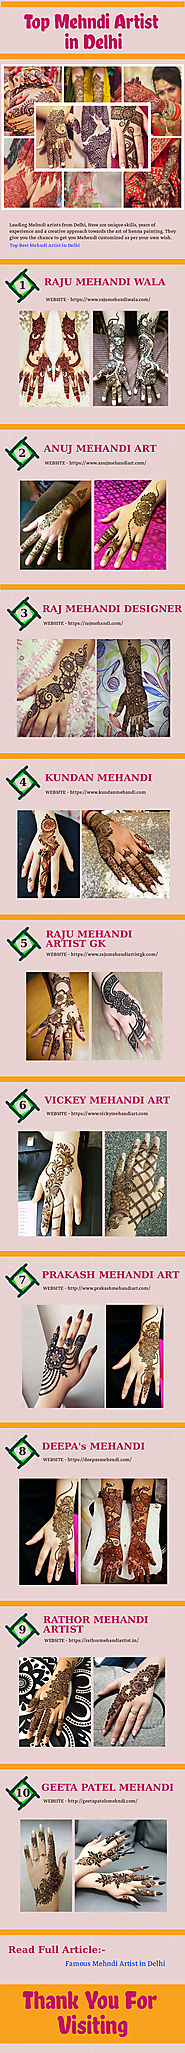 Top Mehndi Artist in Delhi | Infographic